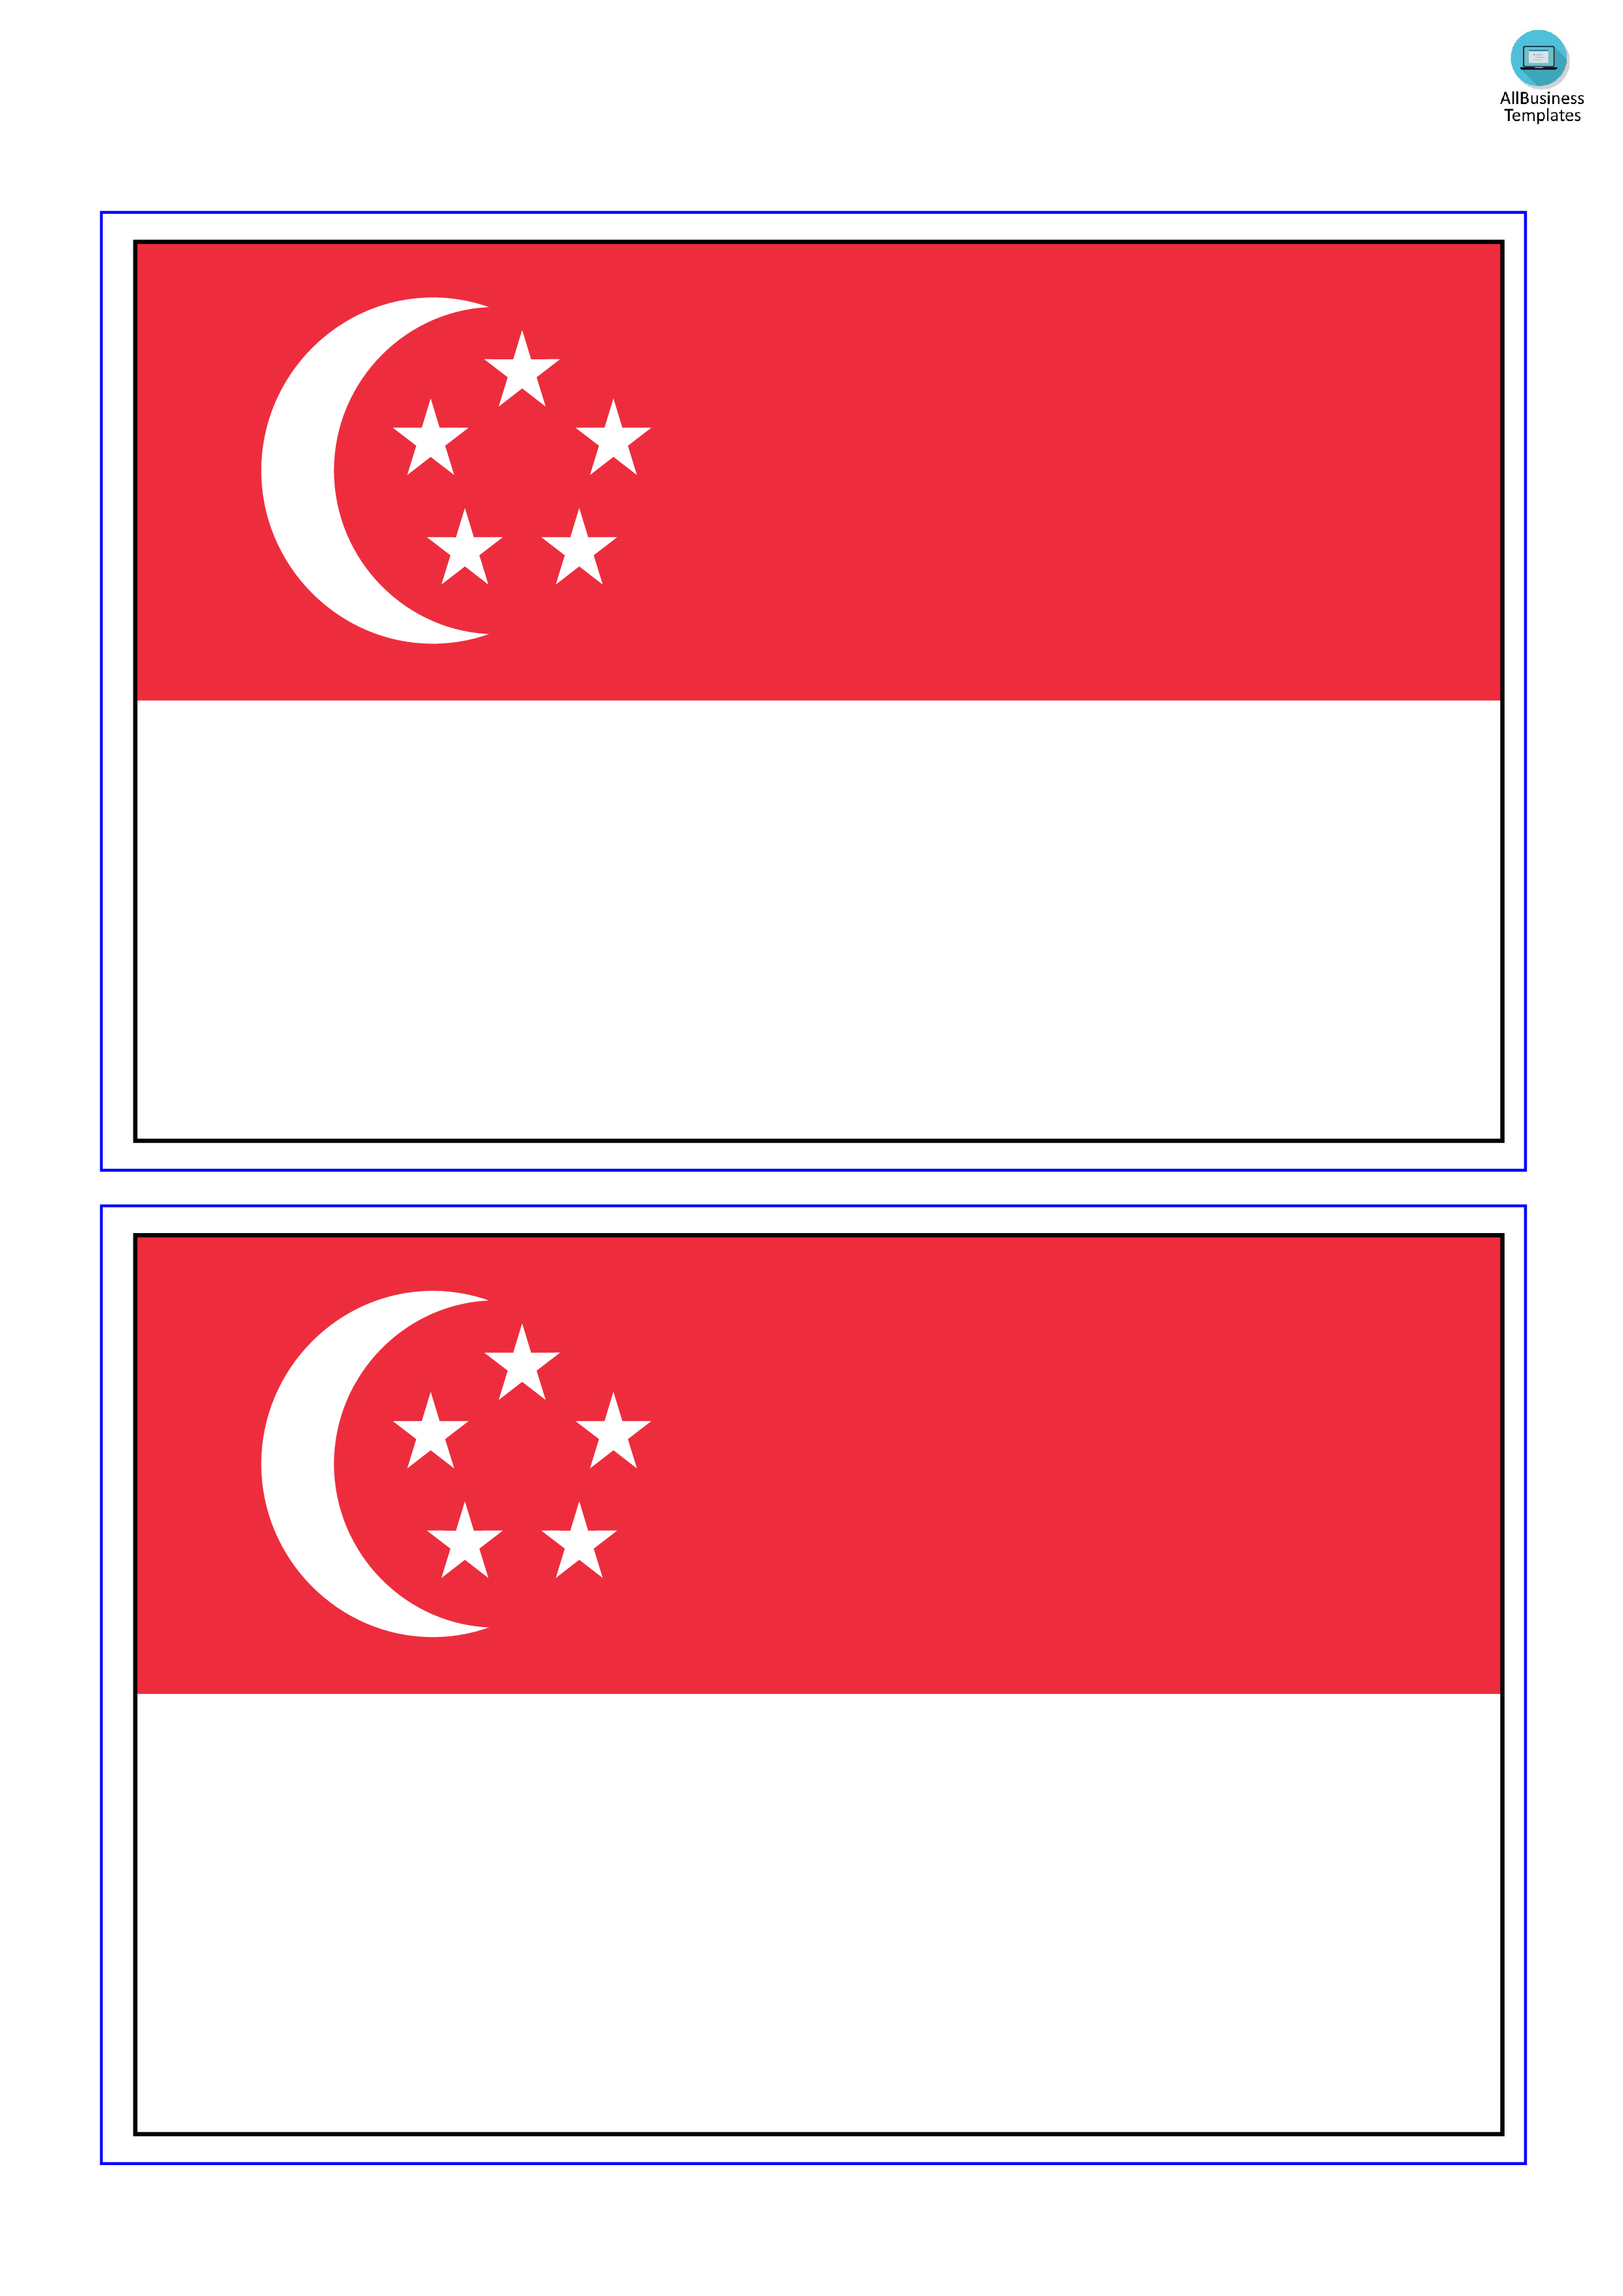 Singapore Flag main image